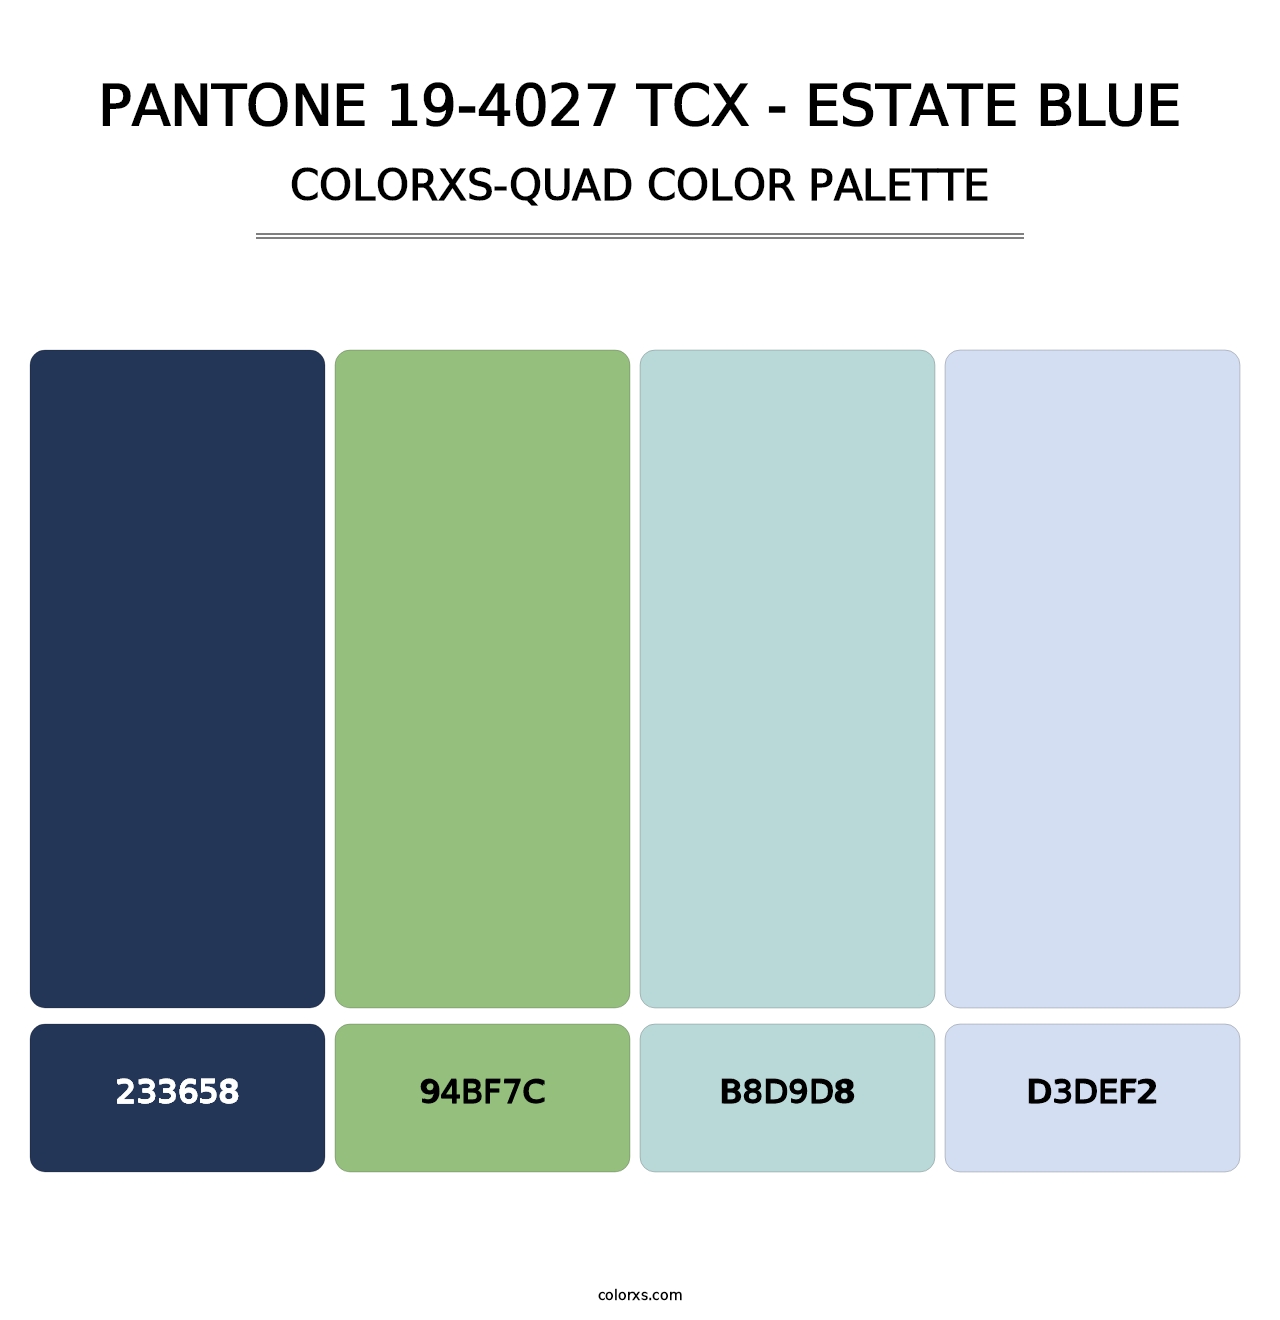 PANTONE 19-4027 TCX - Estate Blue - Colorxs Quad Palette